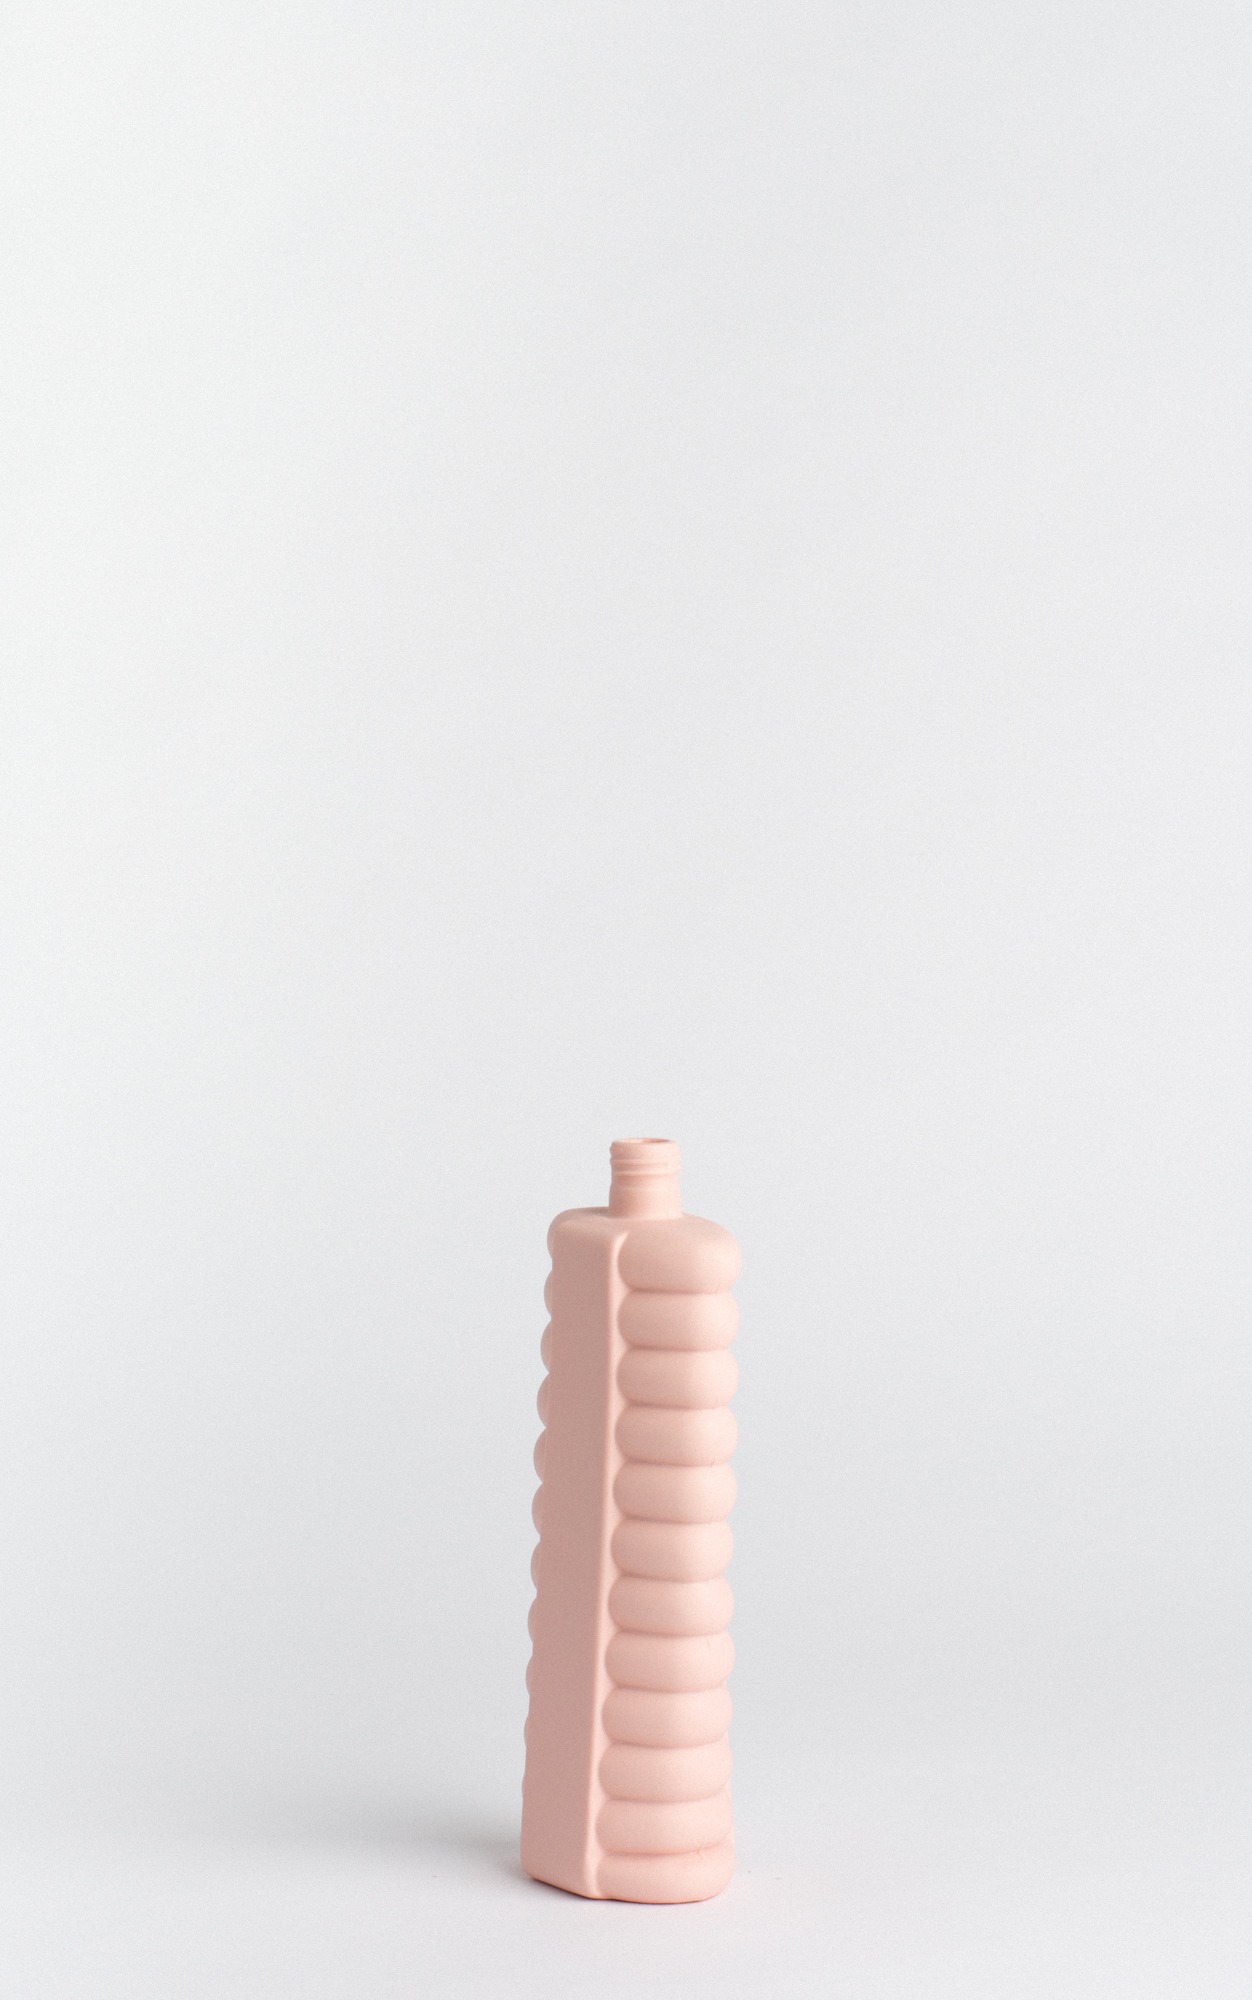 bottle vase #10 pink